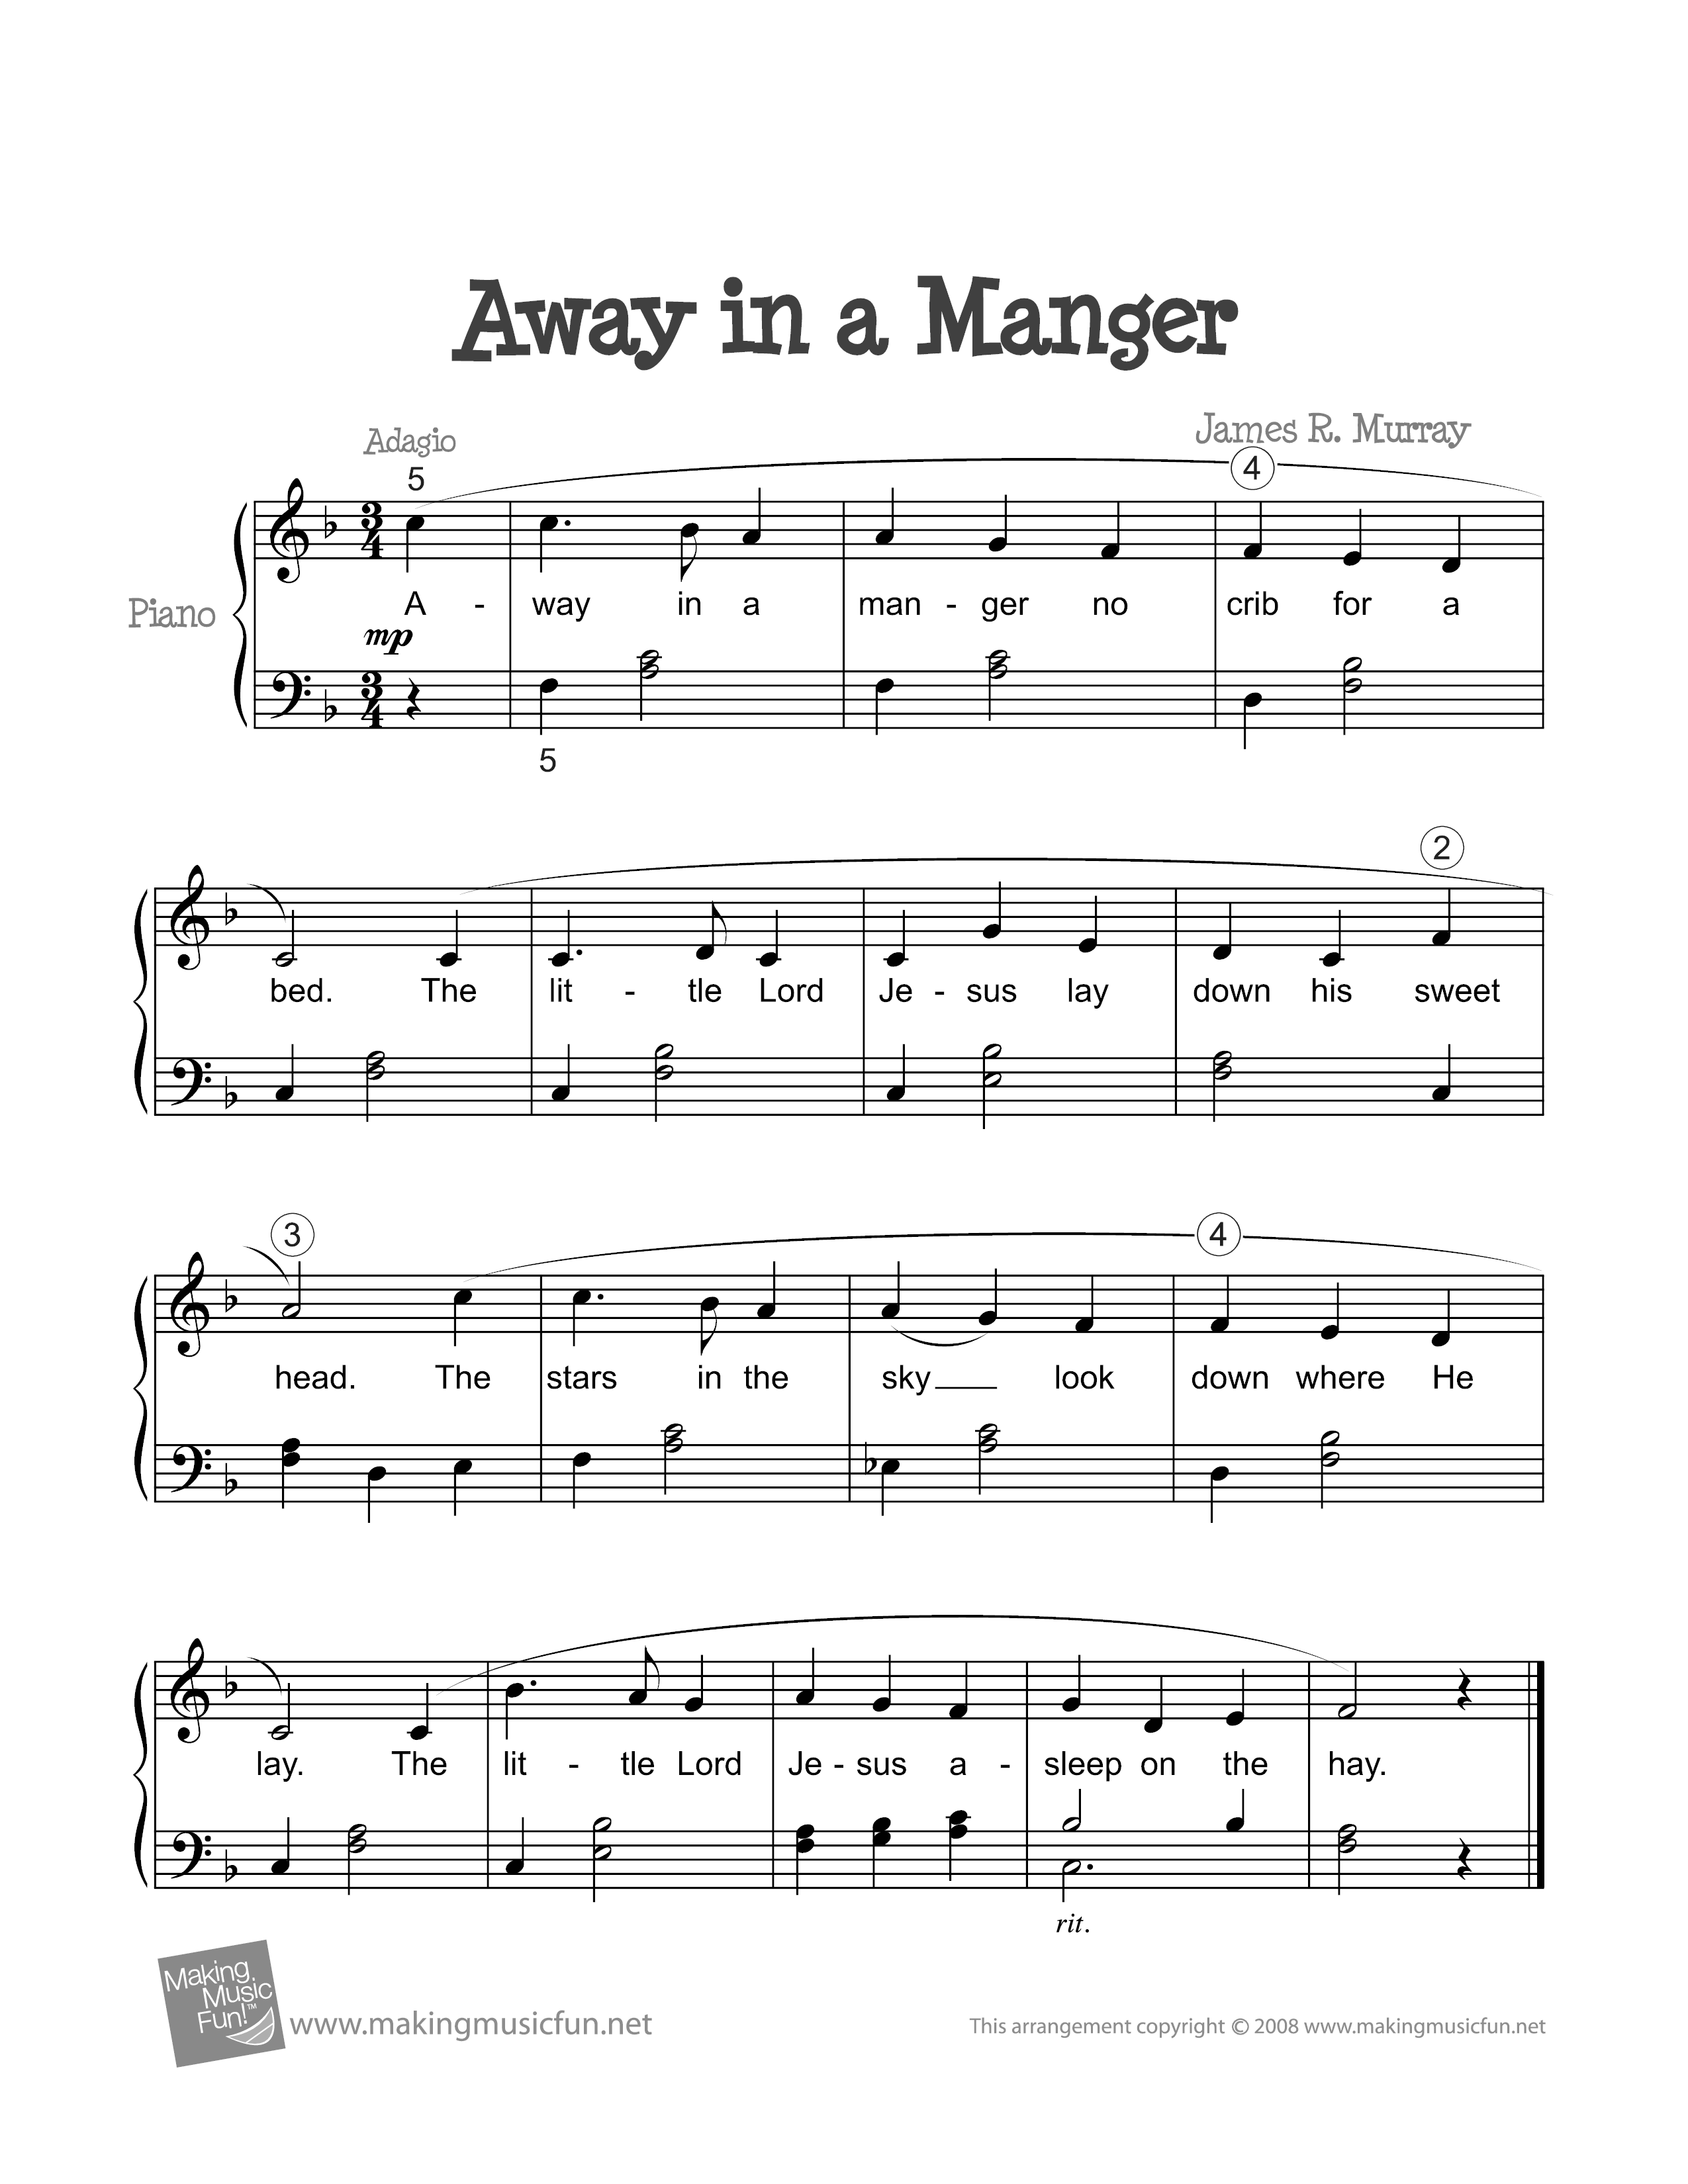 Away in a Manger Score